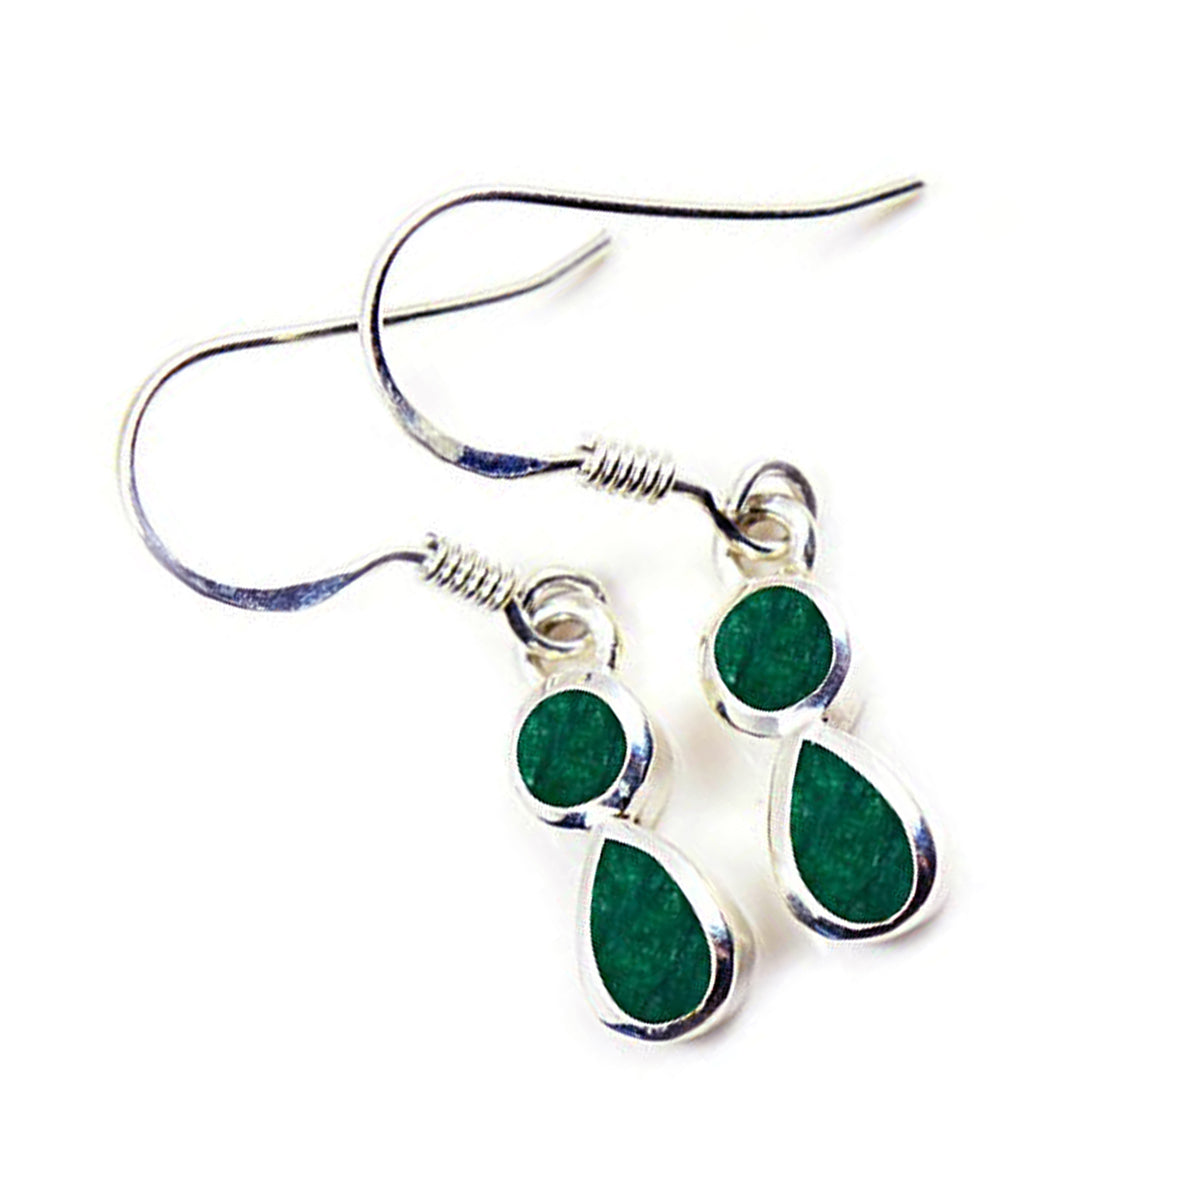 Riyo Pleasing Sterling Silber Ohrring für Damen, indischer Smaragd-Ohrring, Lünettenfassung, grüner Ohrring, baumelnder Ohrring